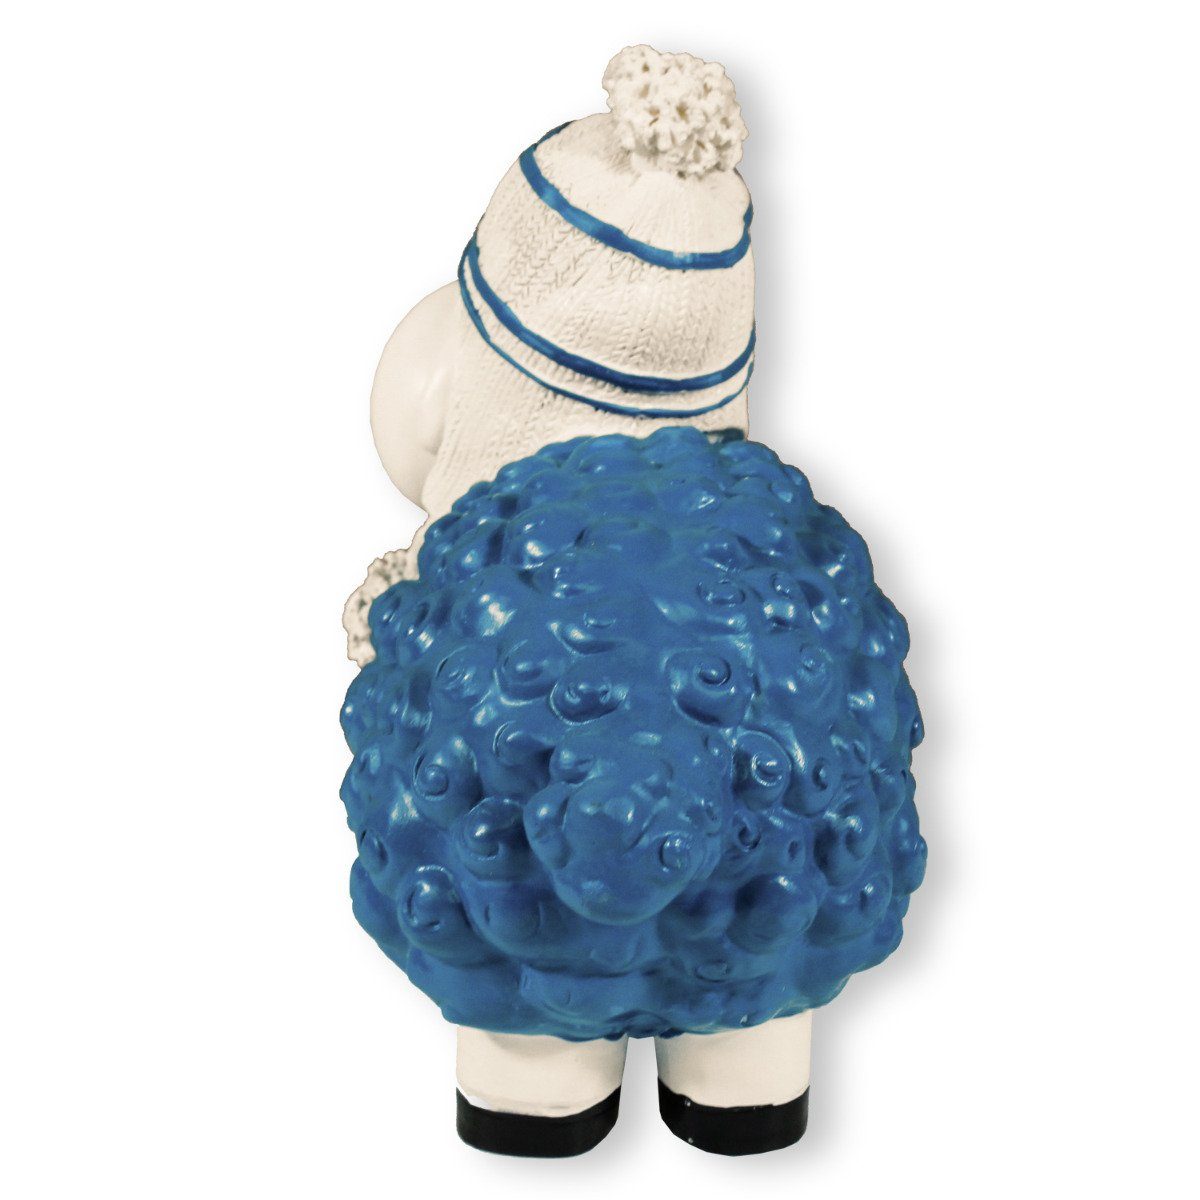 Wetterfest, mit Buntes Schaf, Schaf Deko Handbemalt, Dekofigur Schaf Gartenfigur lustiges blau Mütze colourliving